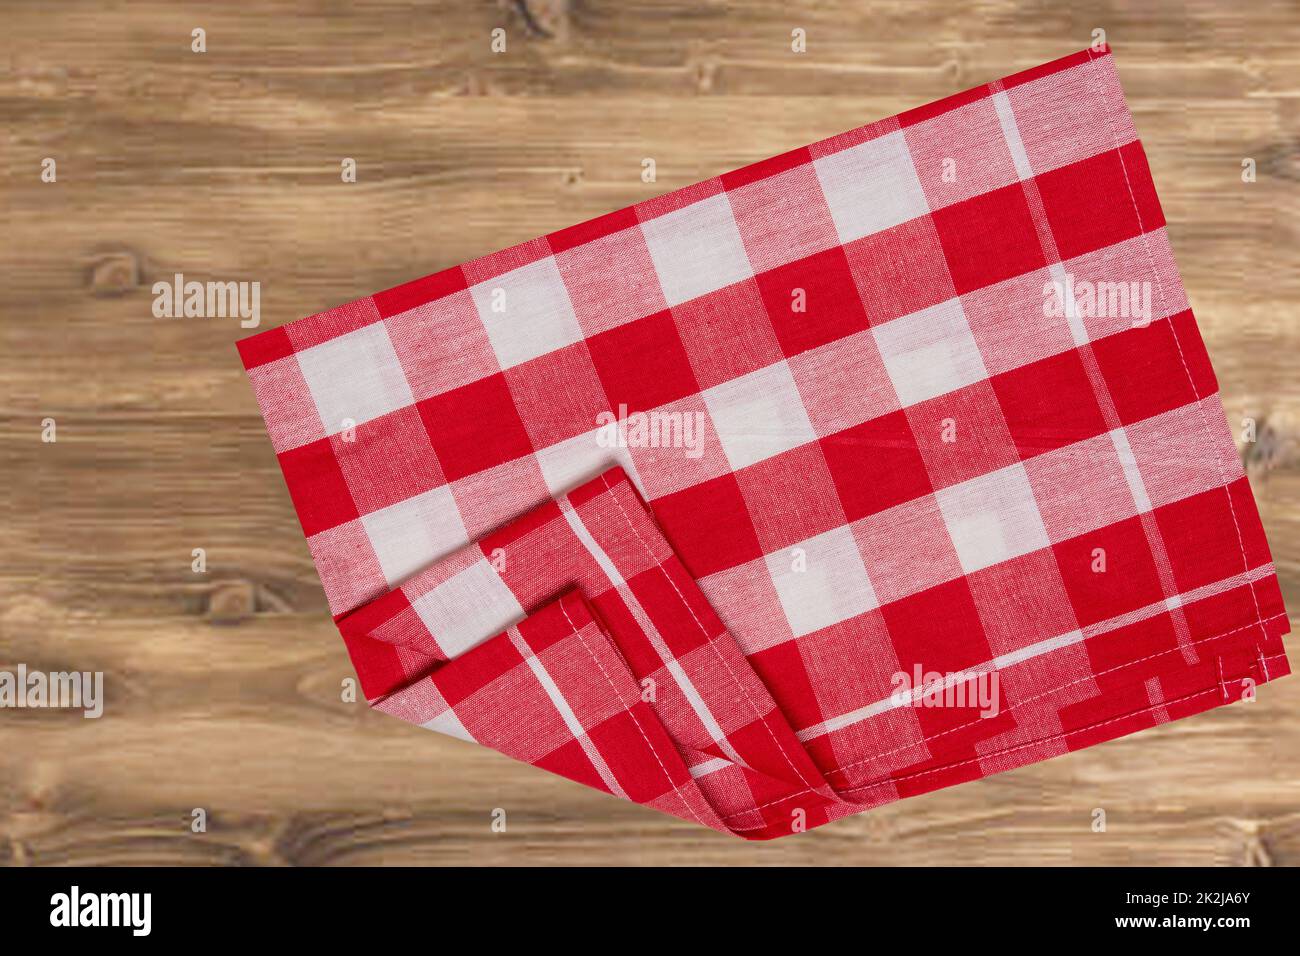 Leeres Tischprodukt. Blick von oben auf einen rustikalen Holztisch mit rot-weiß karierter Tischdecke oder Serviette. Vorlage für die Montage Ihrer Lebensmittel- und Produktpräsentation. Platz für Essensrezepte. Stockfoto